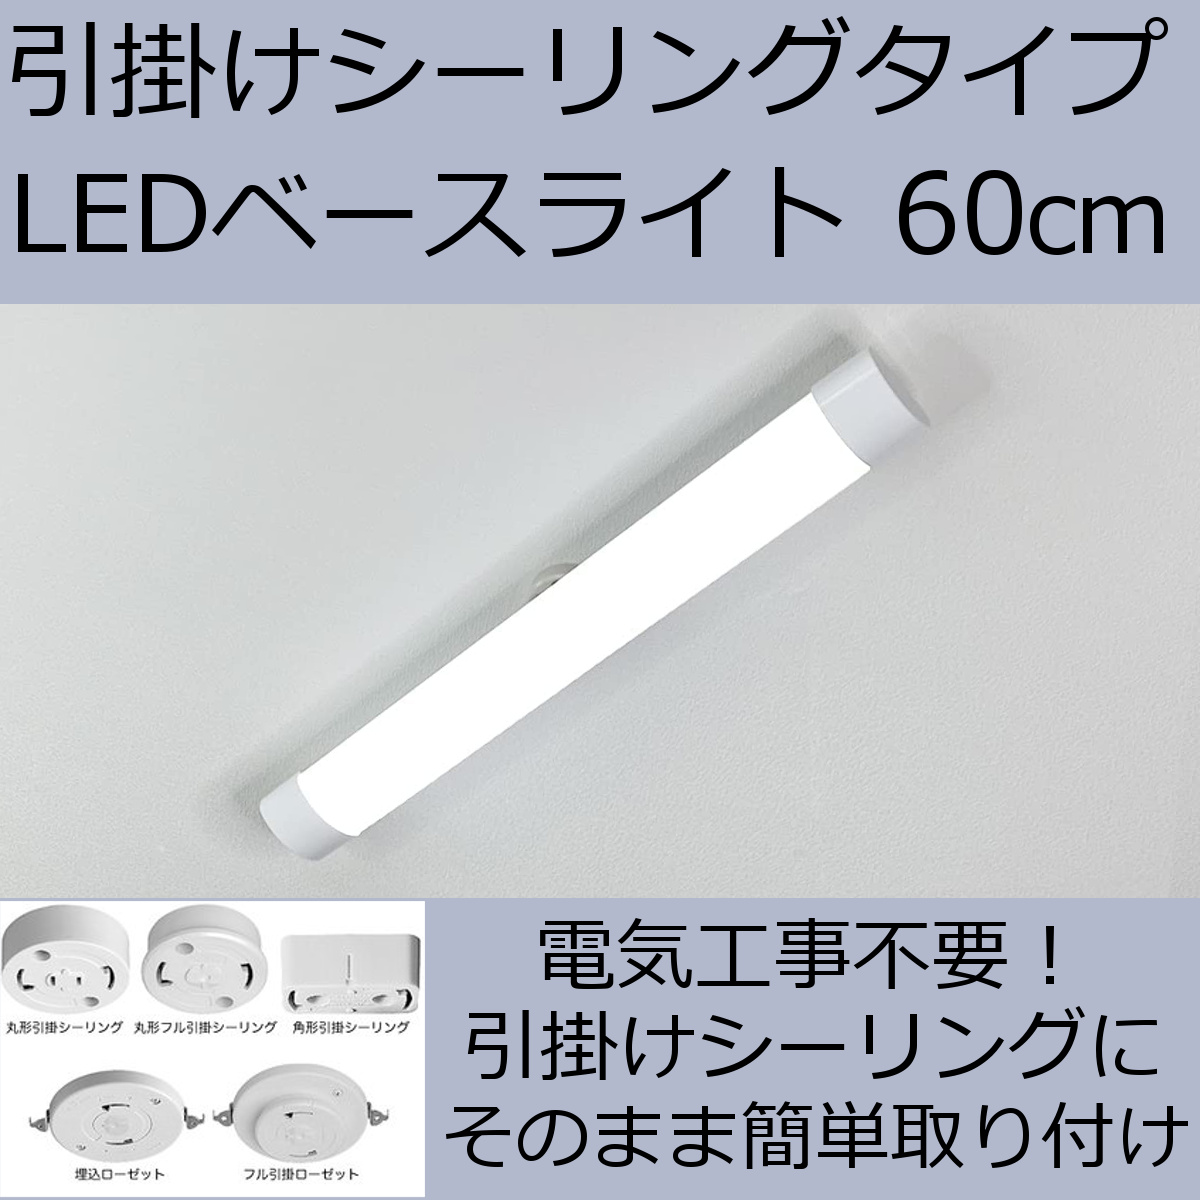 led蛍光灯 器具一体型 直付 タイプ選択 色選択 4200LM 6畳 8畳用 led